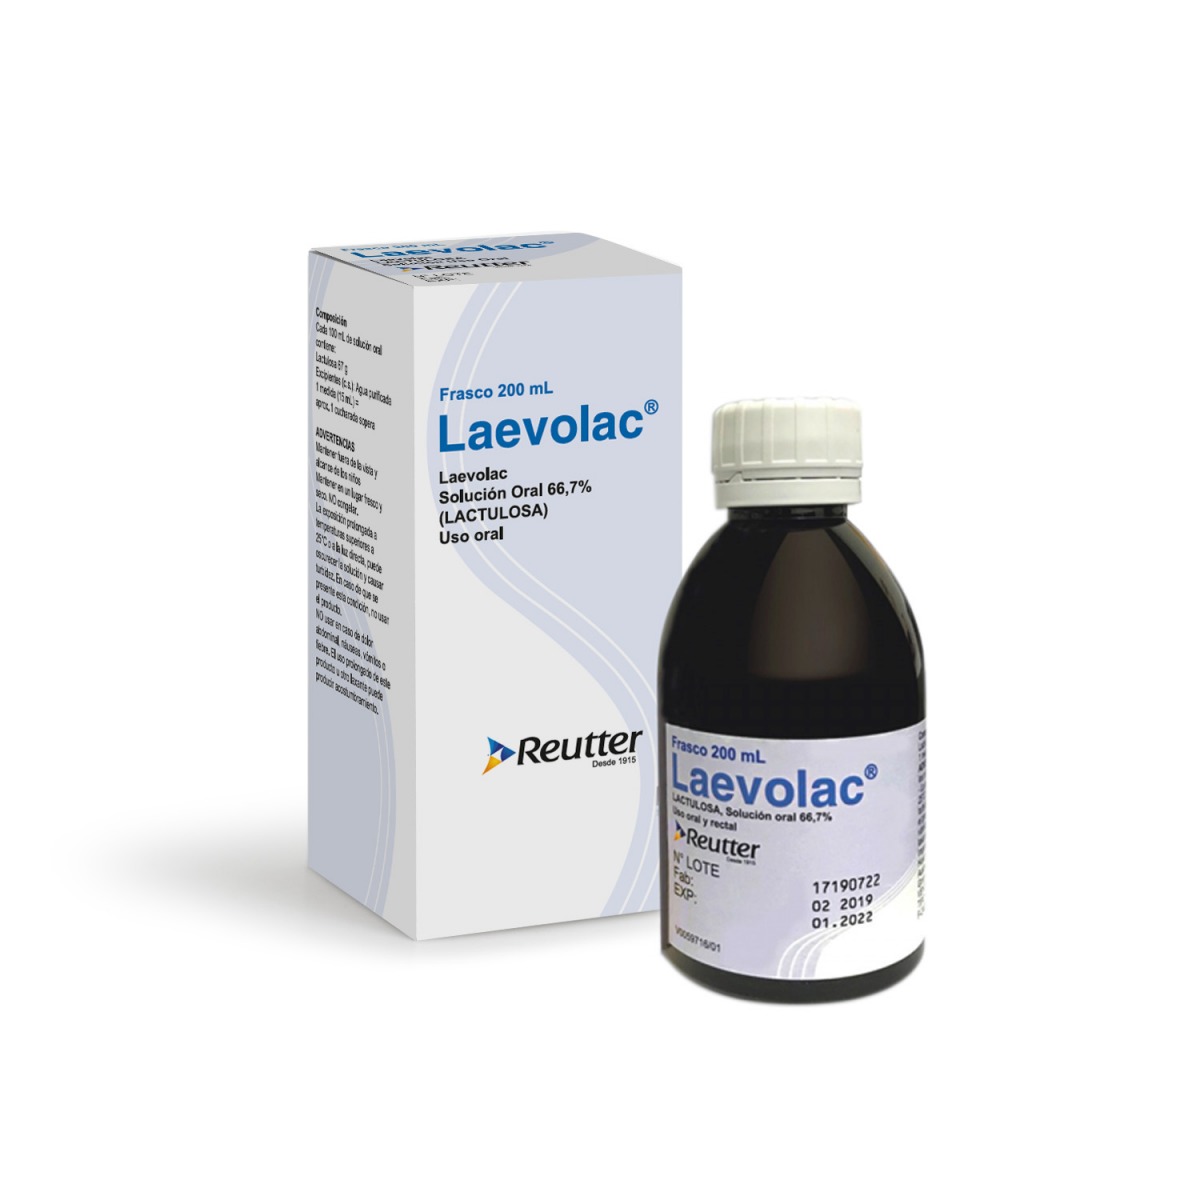 Laevolac® Solución oral 66,7% (Lactulosa).